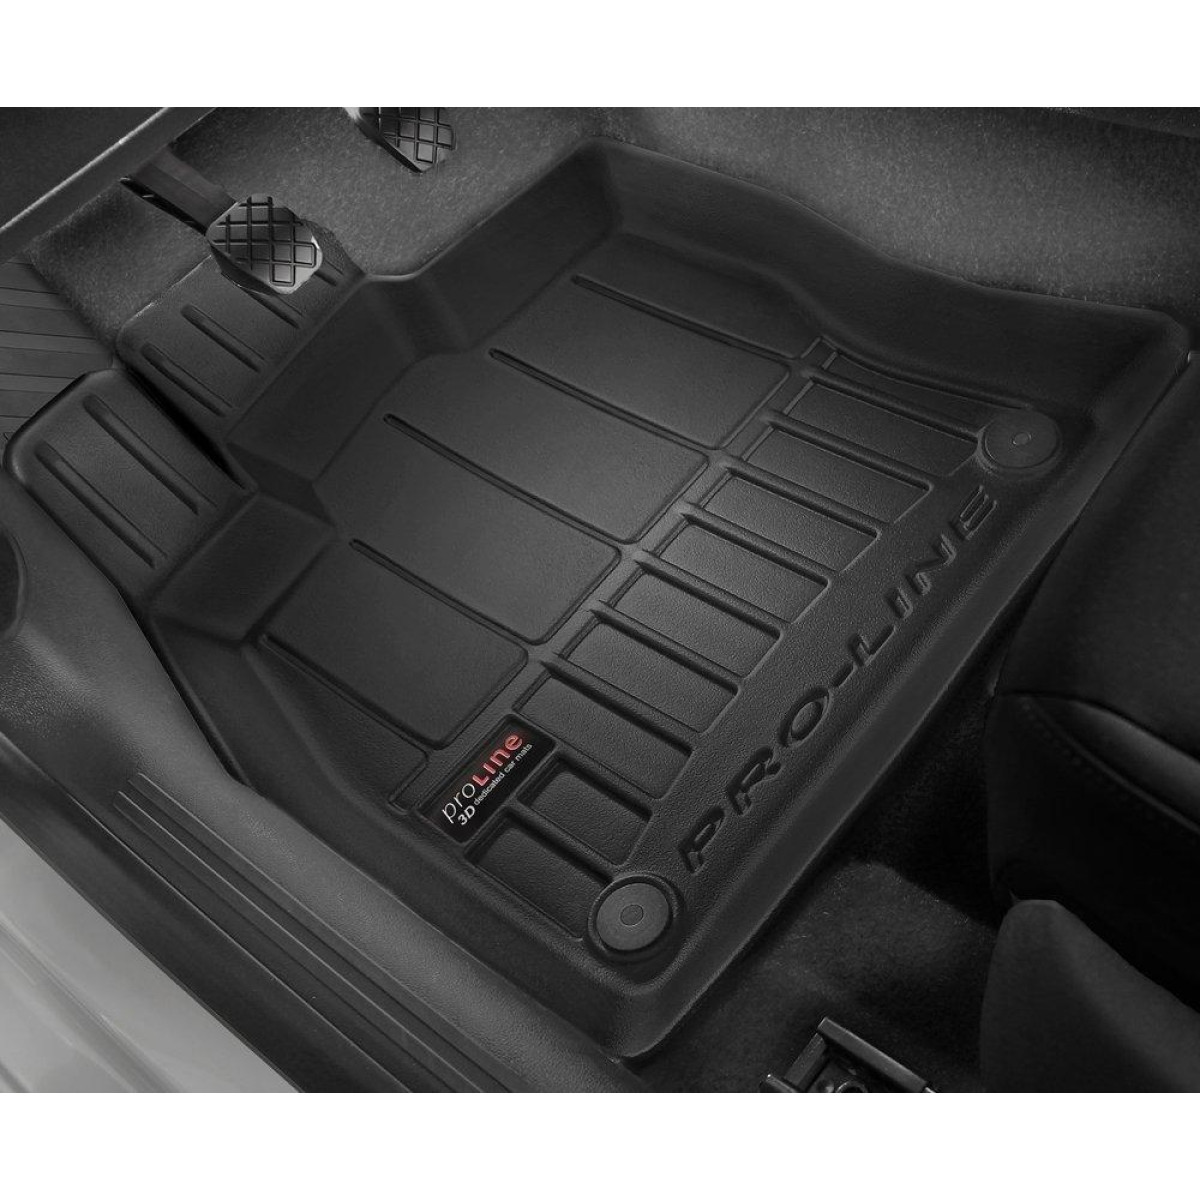 Guminiai kilimėliai Proline BMW X6 (F16) 2014-2019m. / paaukštintais kraštais